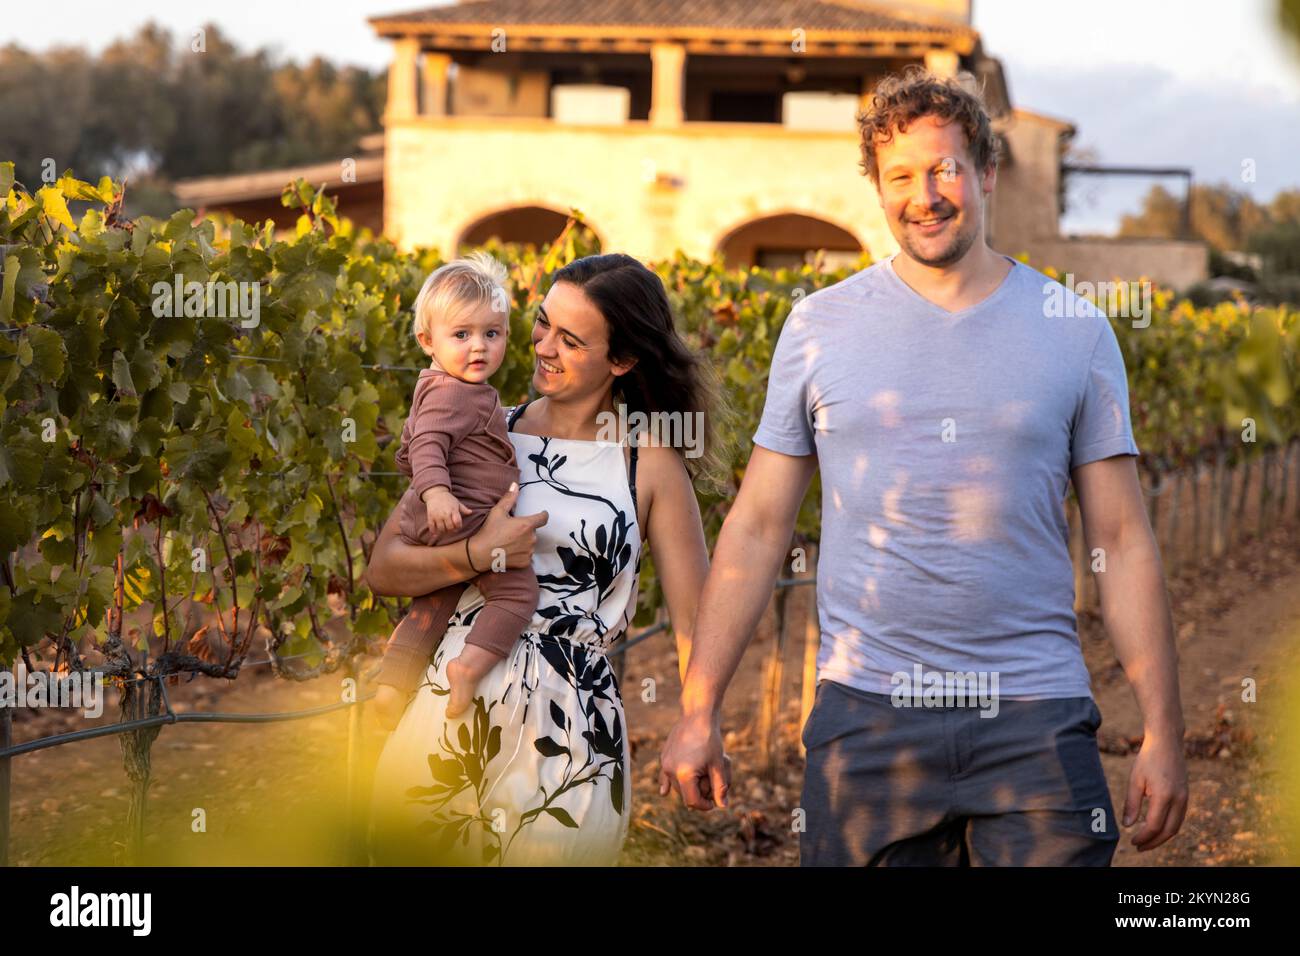 Junge Familie auf einem Spaziergang durch einen mediterranen Weinberg Stockfoto